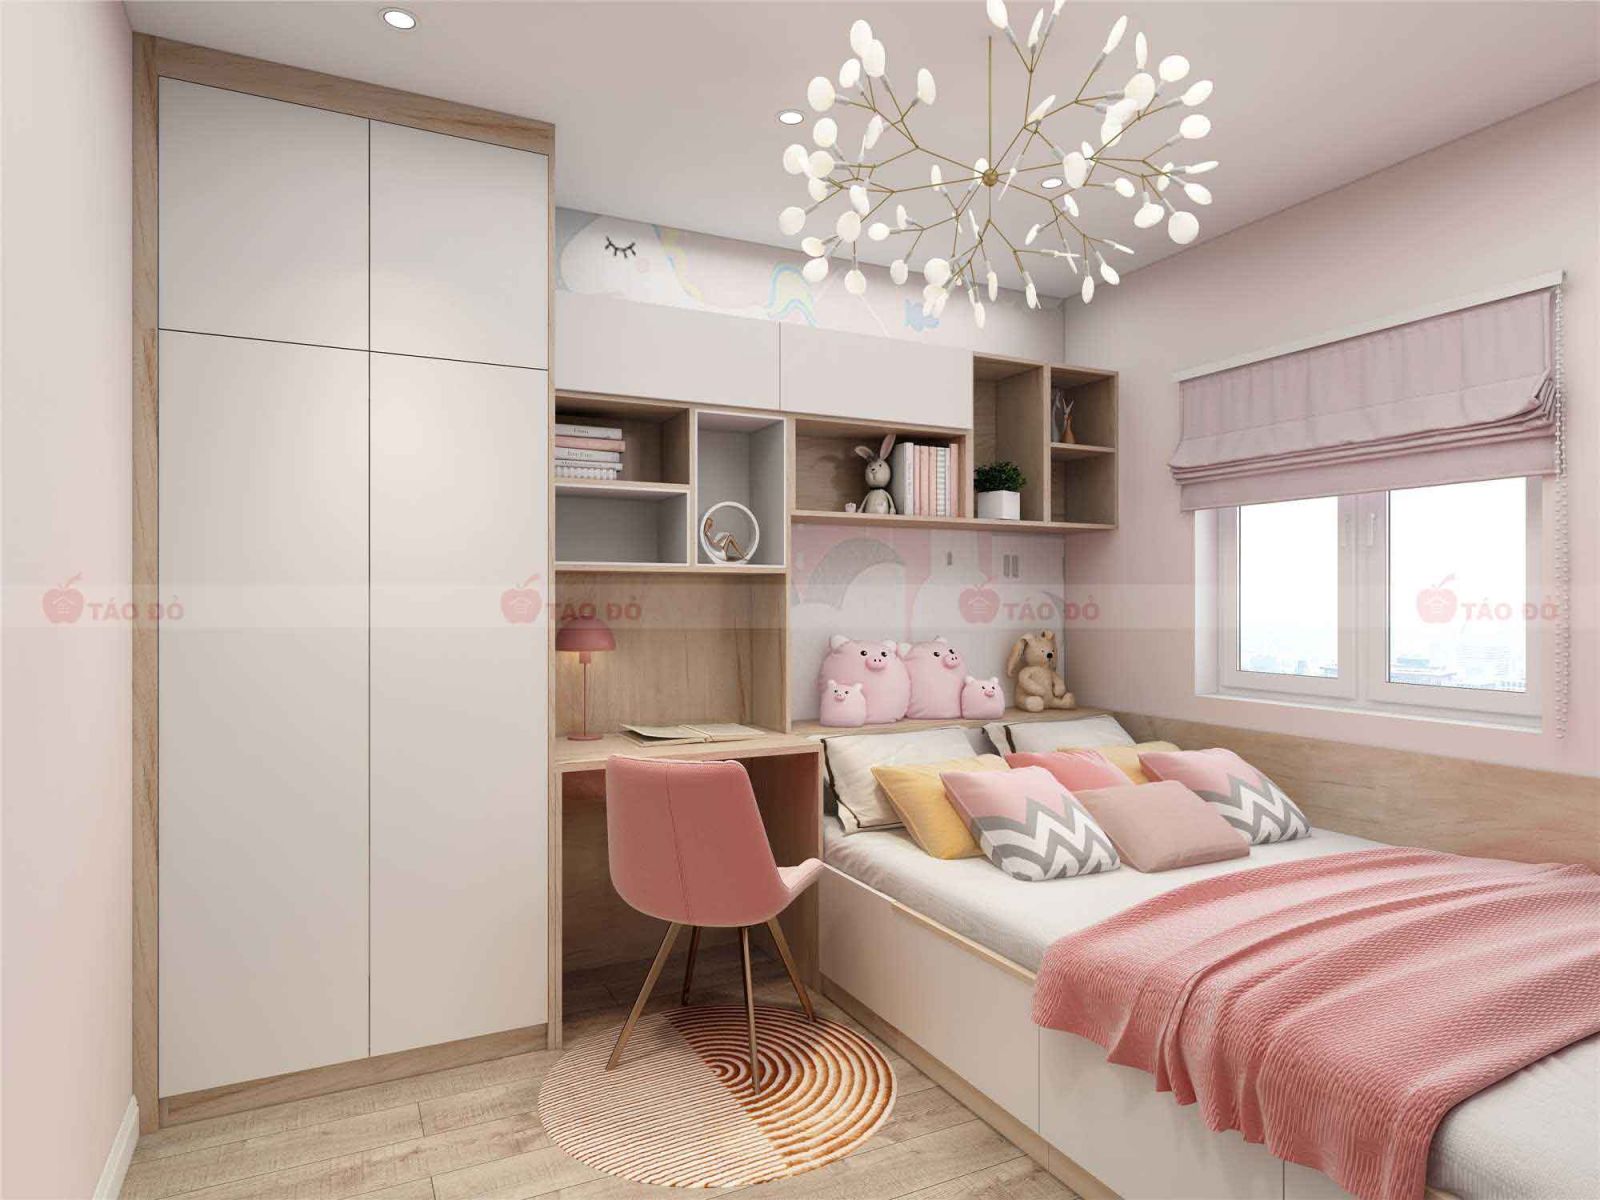 thiết kế nội thất phòng ngủ cho bé hải phòng